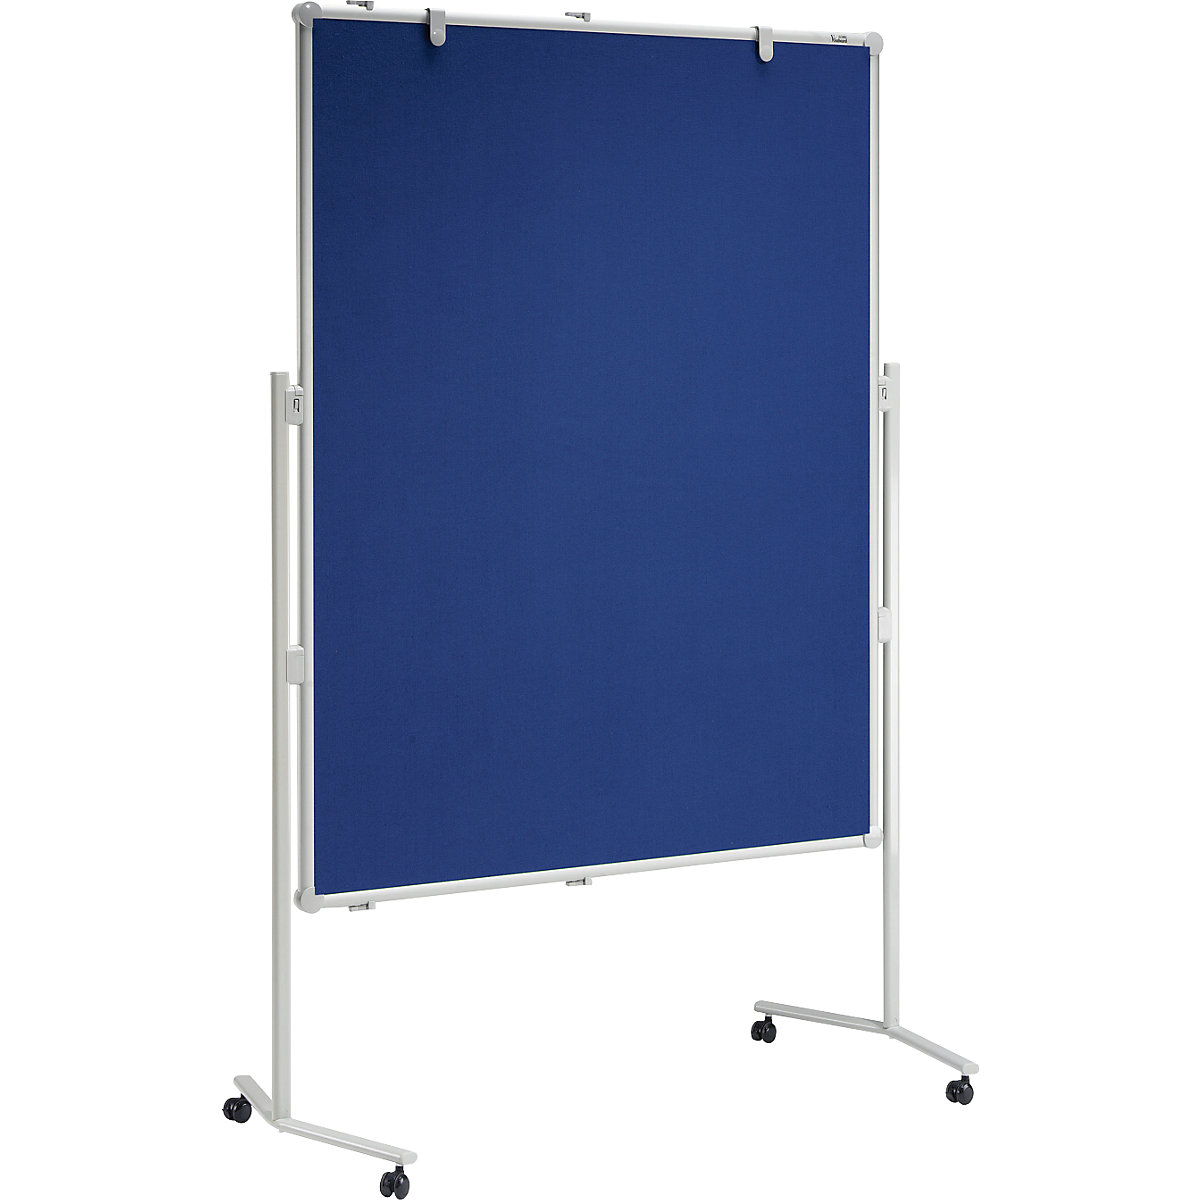 Presentatiebord MAULpro – MAUL, oppervlak van textiel, blauw, b x h = 1200 x 1500 mm-3